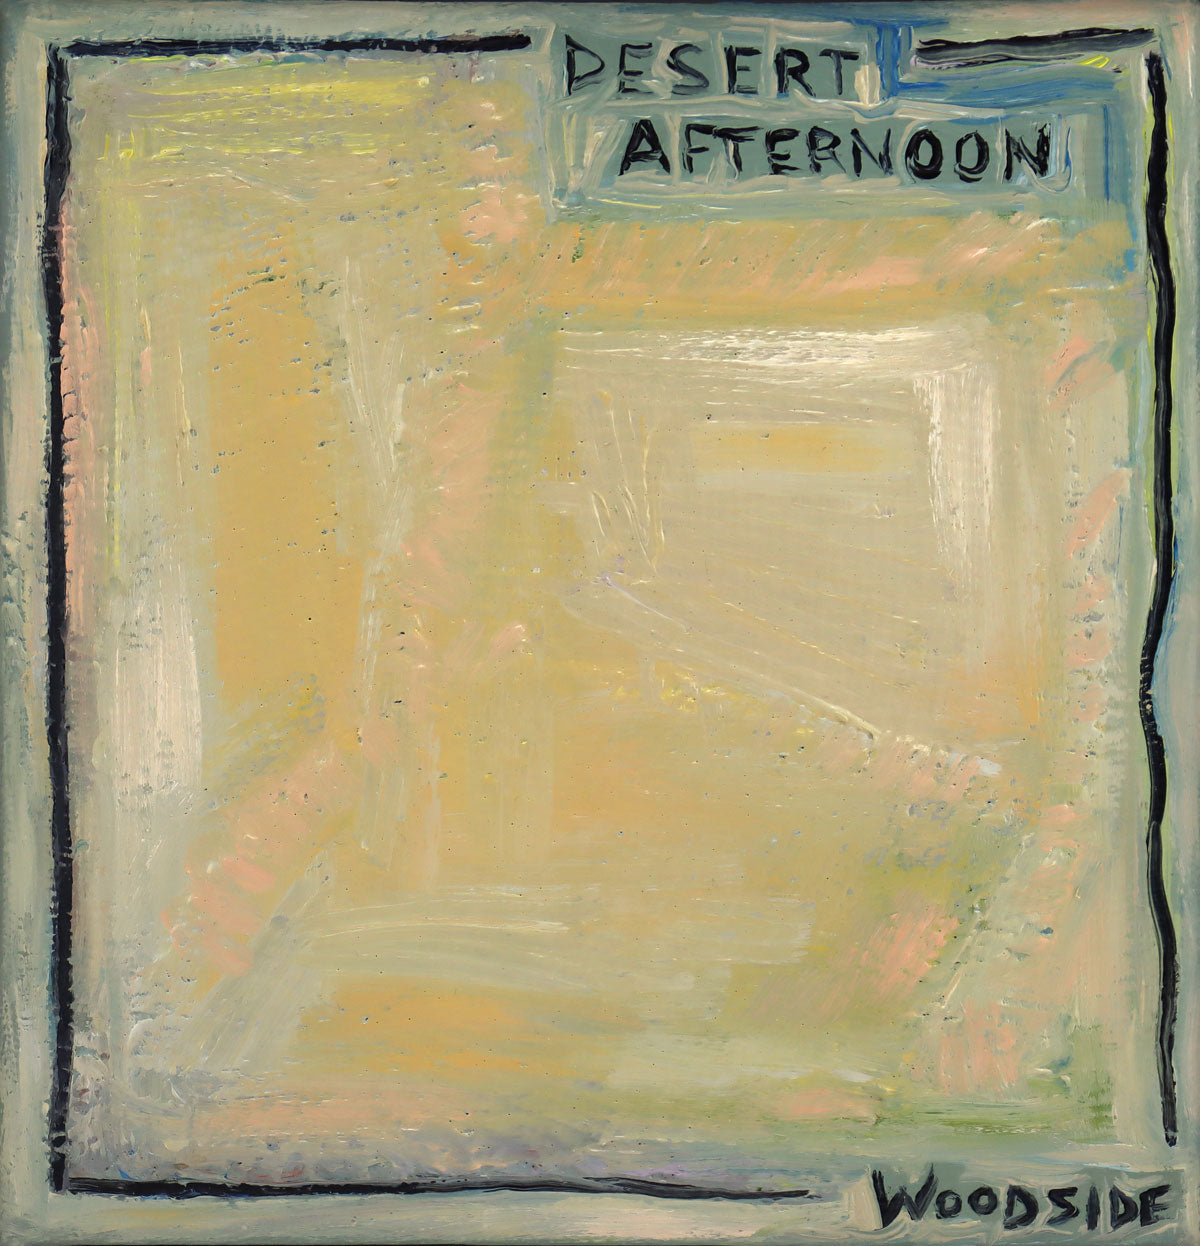 James Woodside - Desert Afternoon (PLV92383-0422-003)